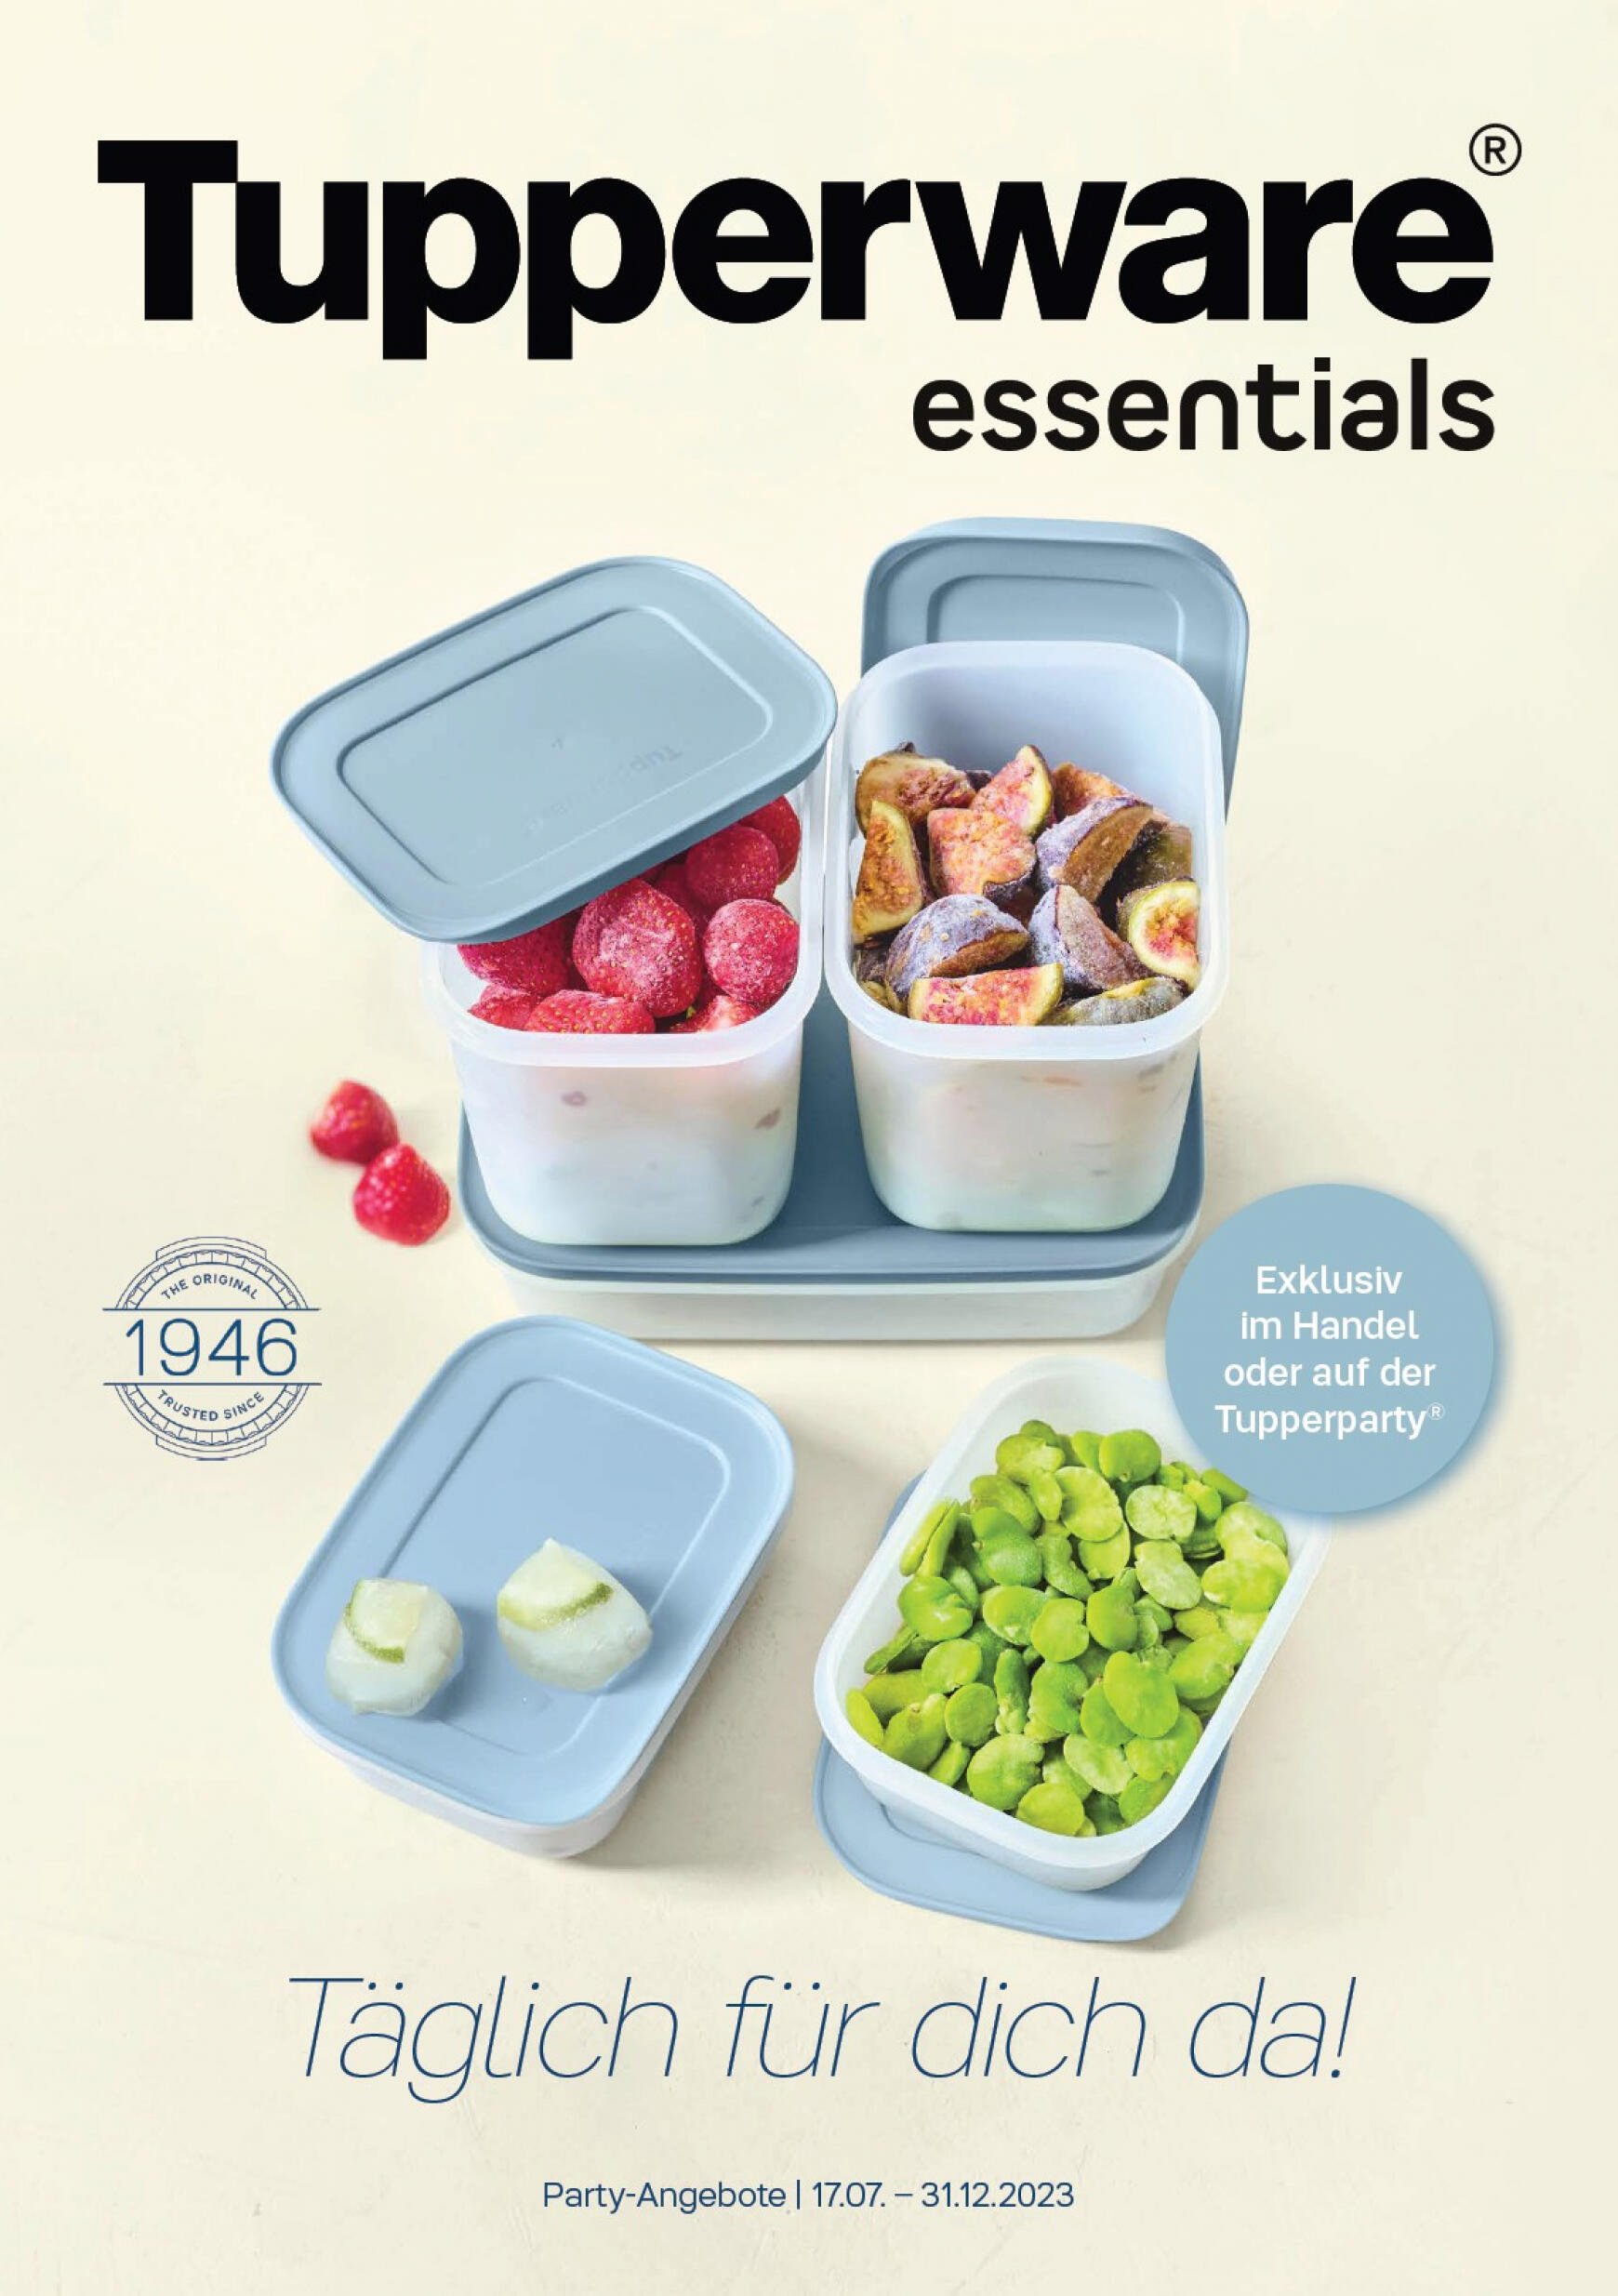 tupperware - Tupperware essentials - page: 1